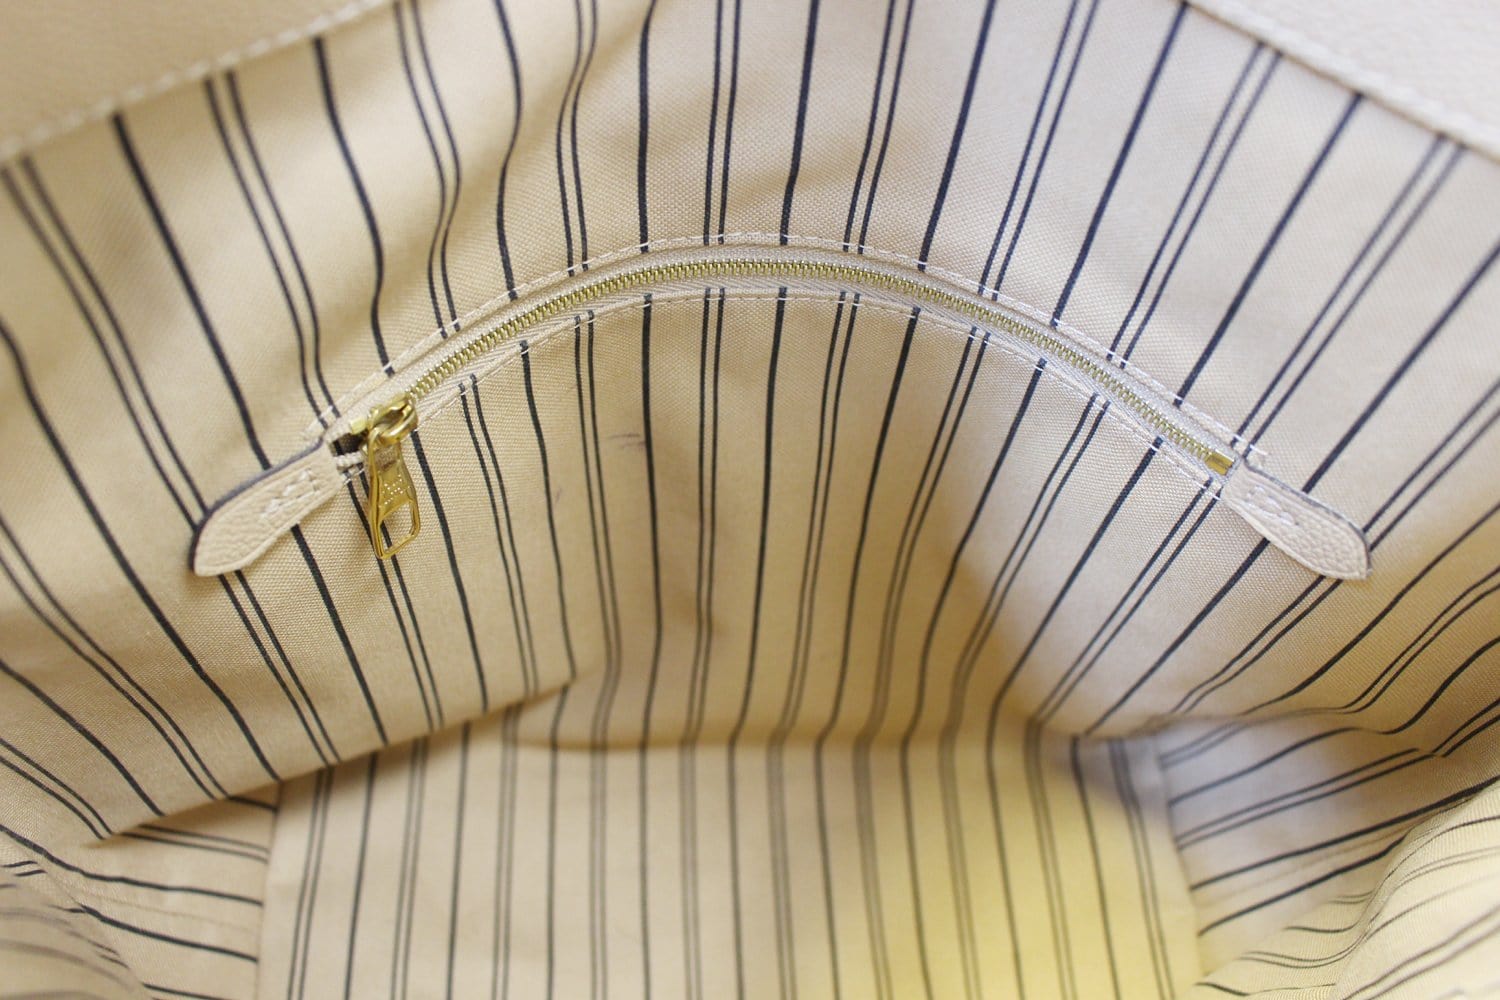 Louis Vuitton - Bagatelle Bag - Tourterelle / Crème - Monogram Leather - Women - Luxury